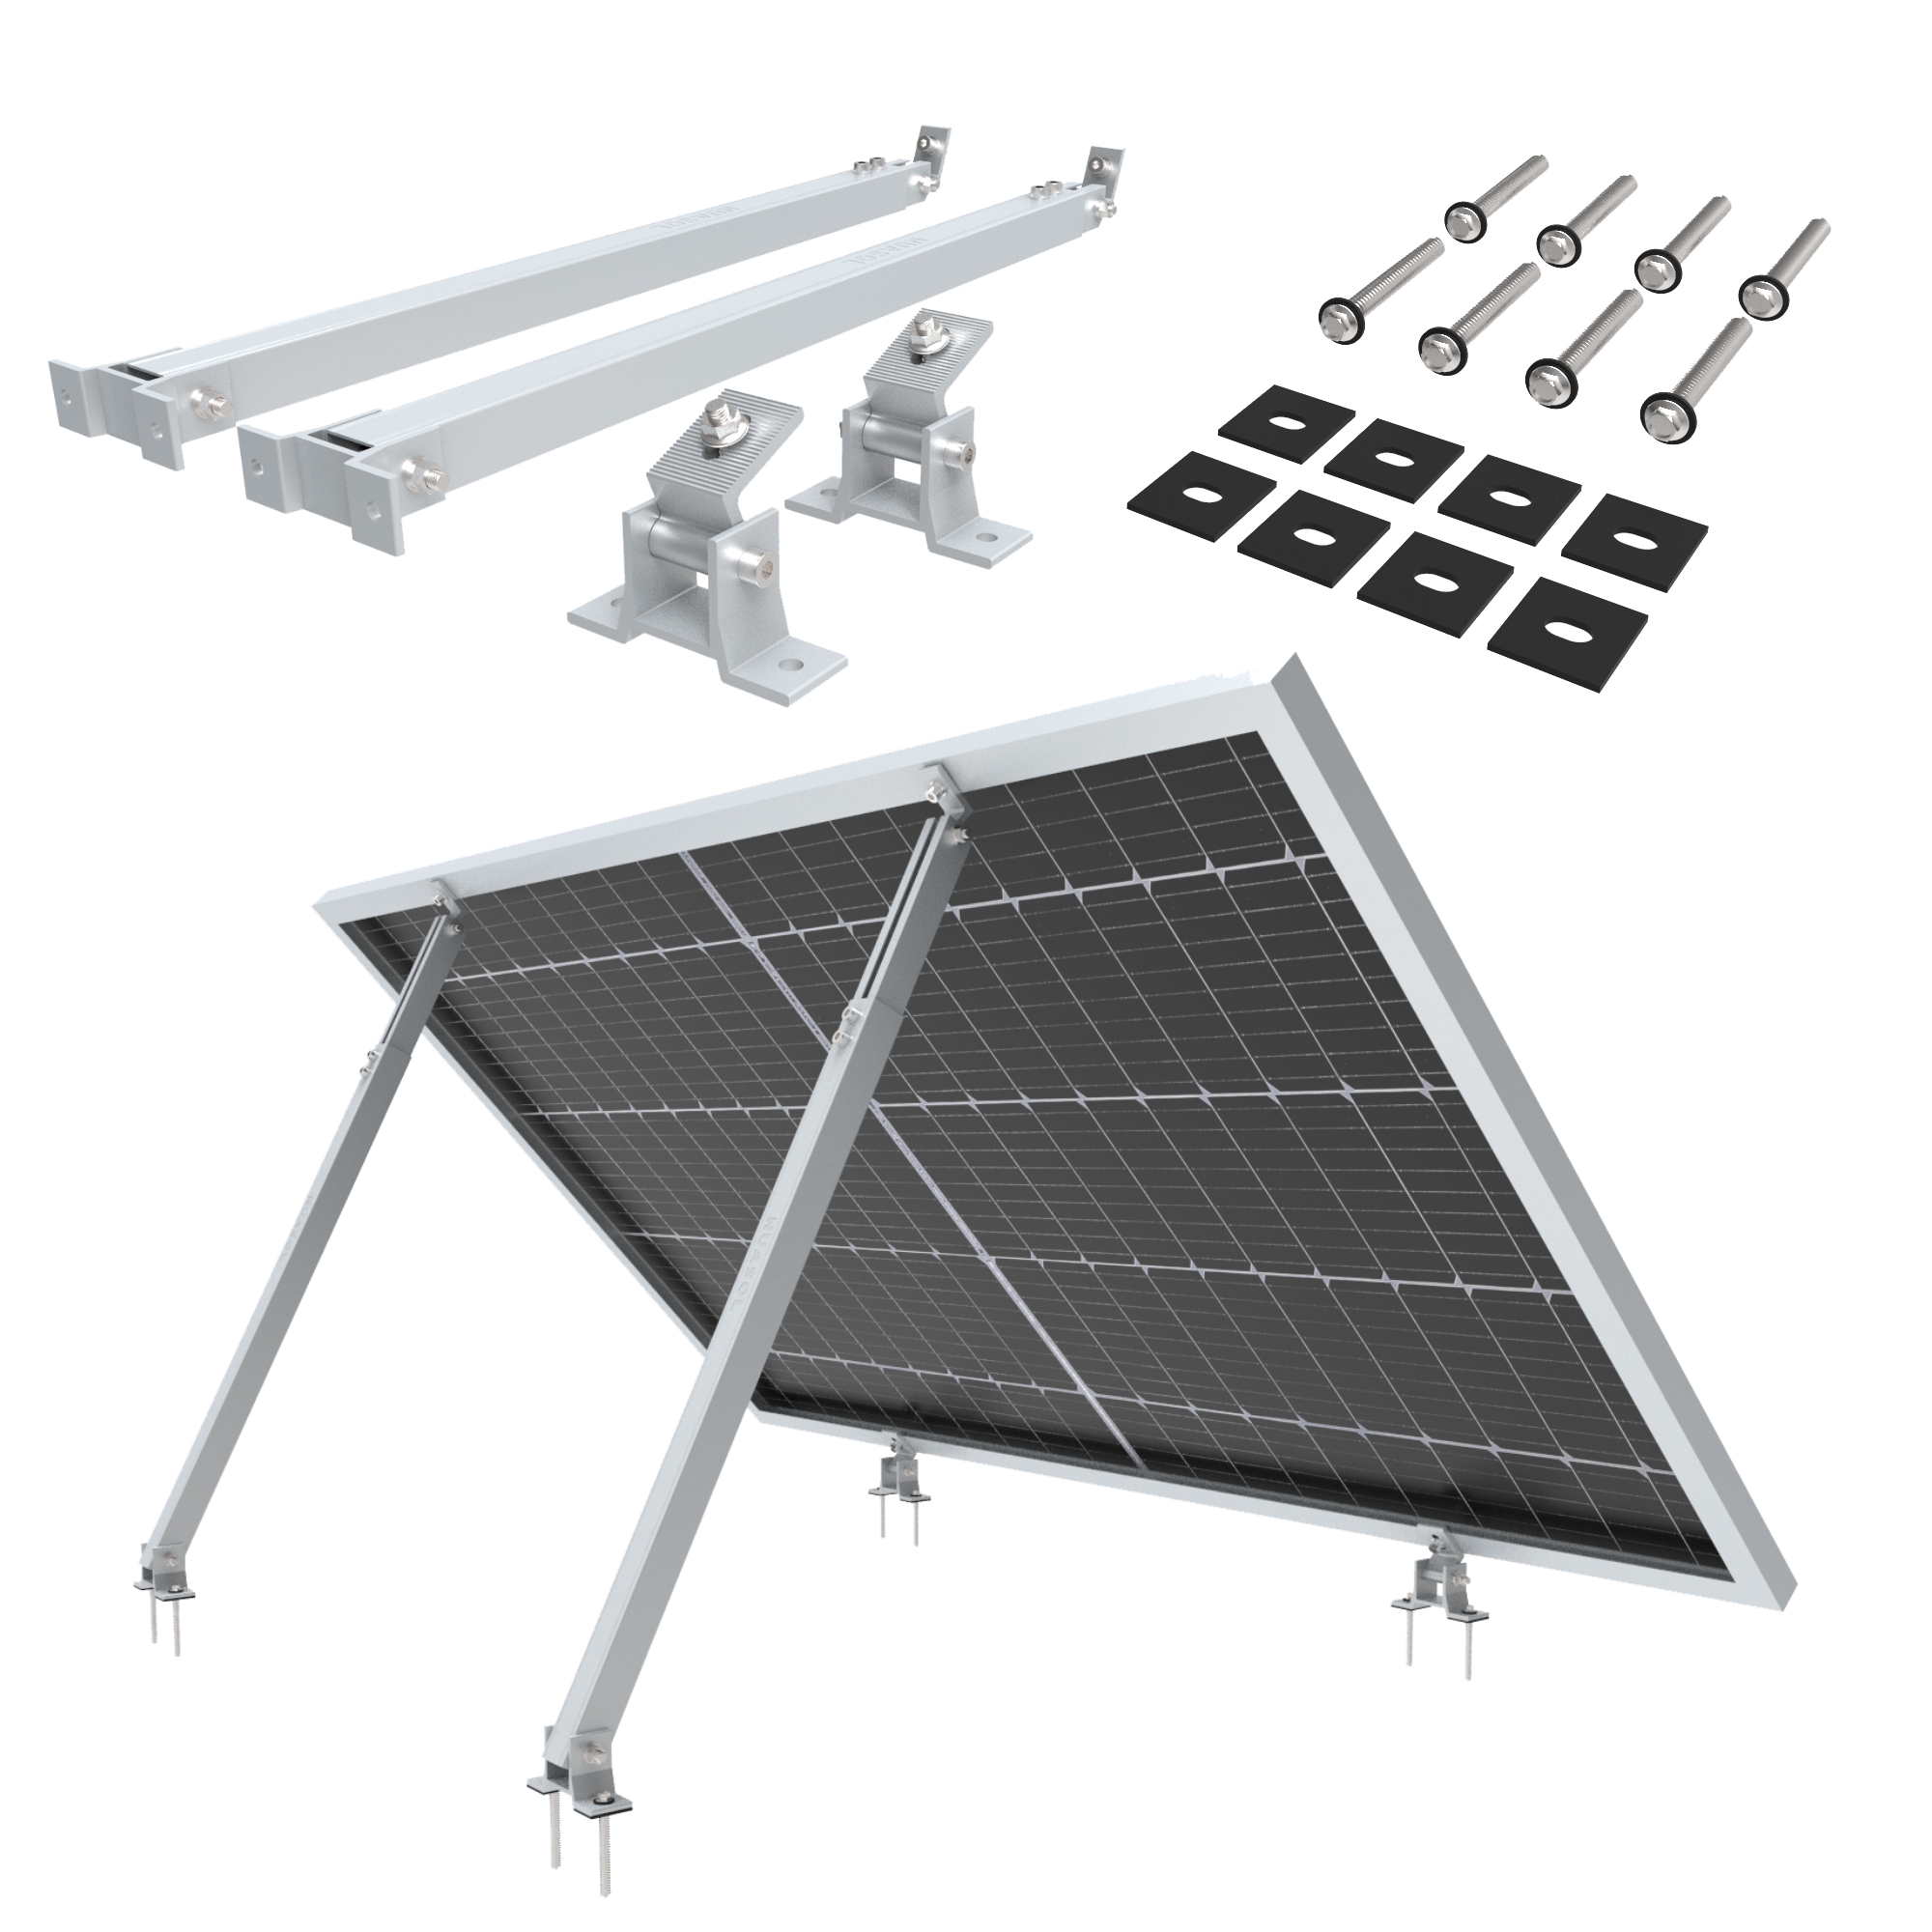 NuaFix – Verstellbare Solarpaneel Halterung 15-30° – Silber - NUASOL  Solarenergiesysteme